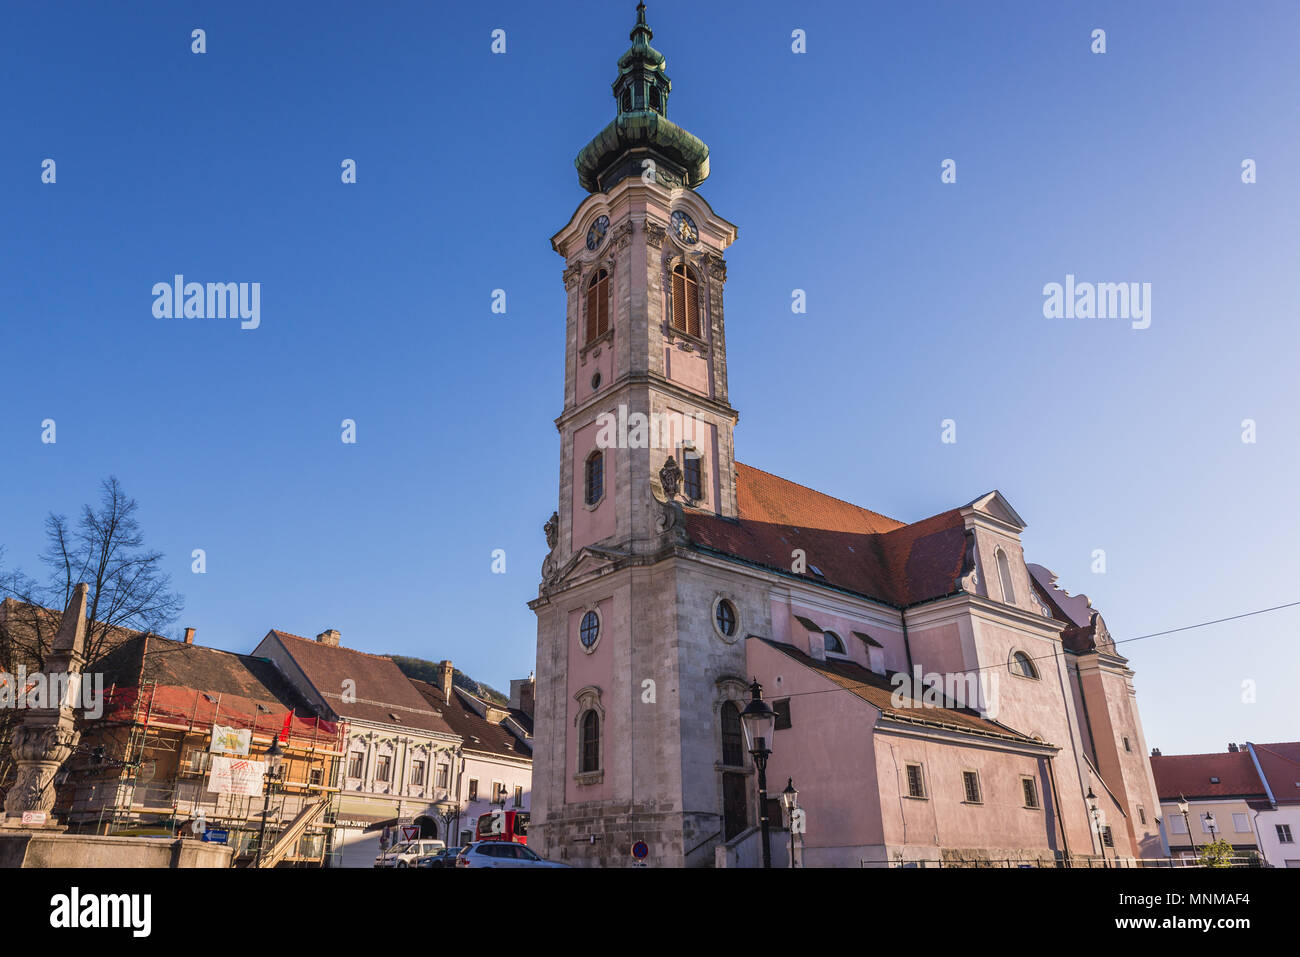 Church in Hainburg an der Donau, Lower Austria Stock Photo